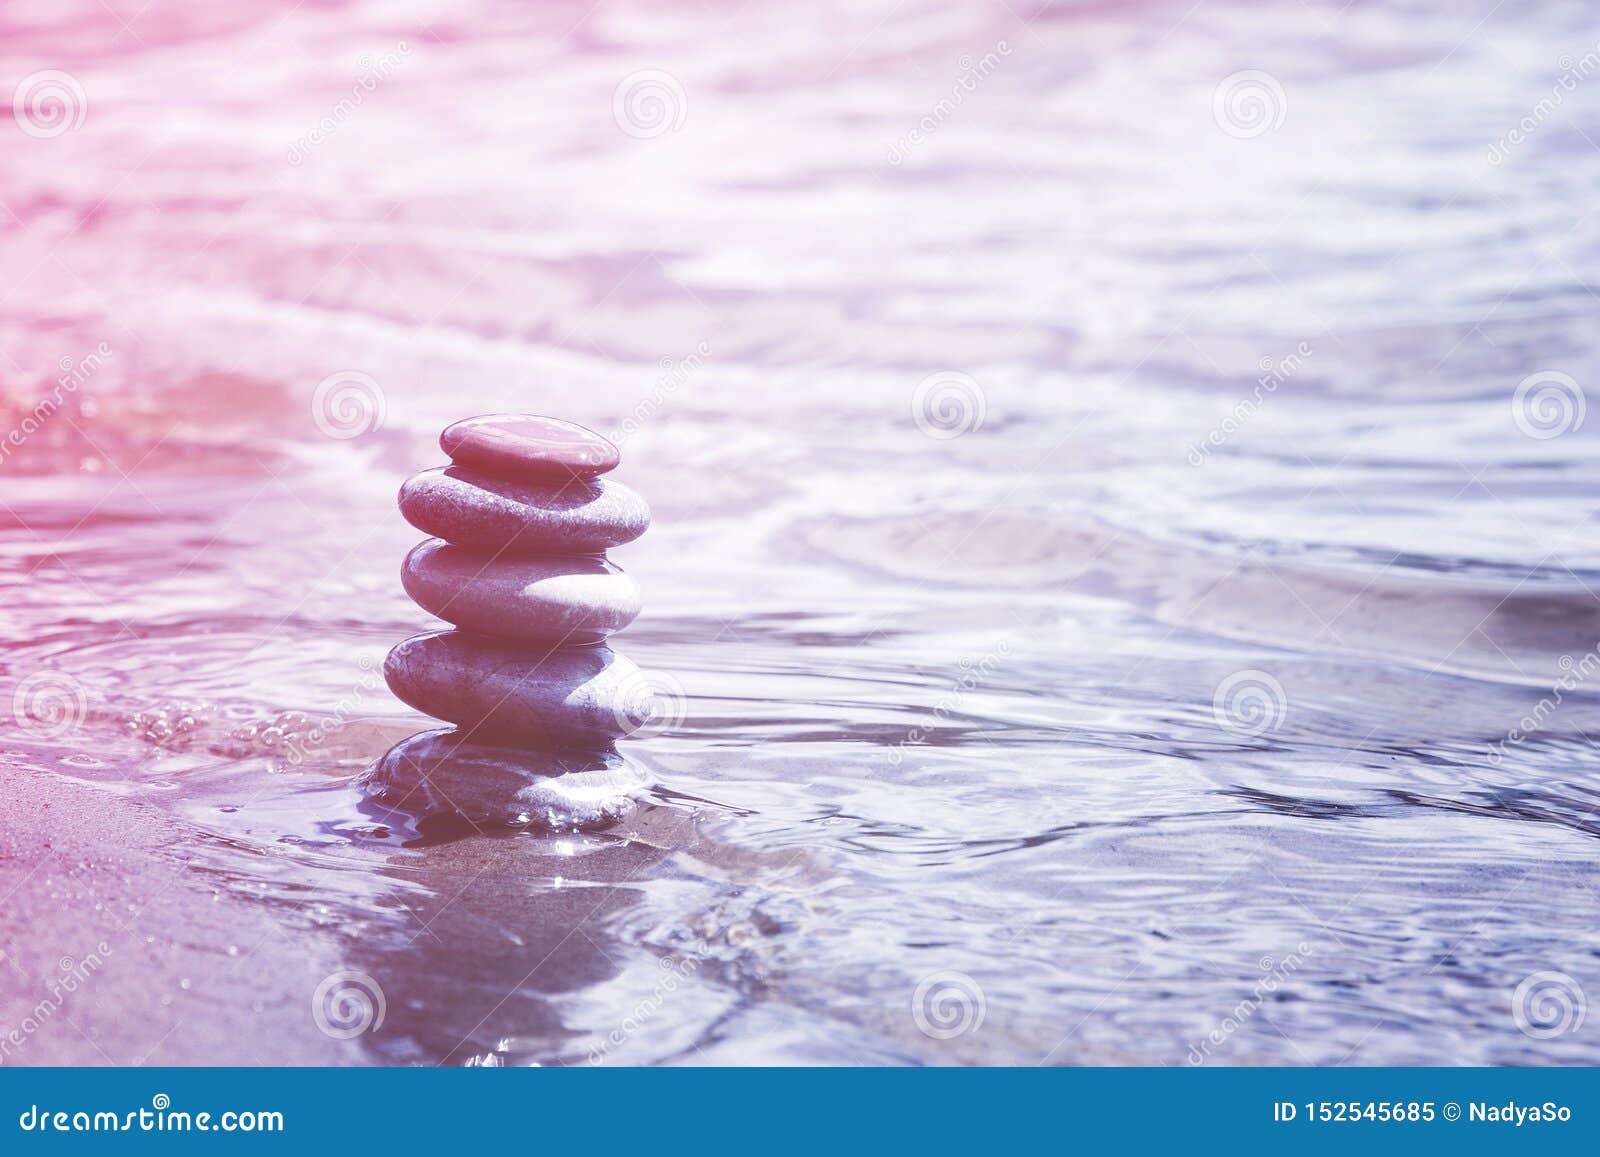 Балансируя камешки в символе воды, раздумья, сработанности и дзэна. Пирамида балансируя камешков на крае воды Созерцание, раздумье, символ дзэна, пинк и пурпурный мягкий тон